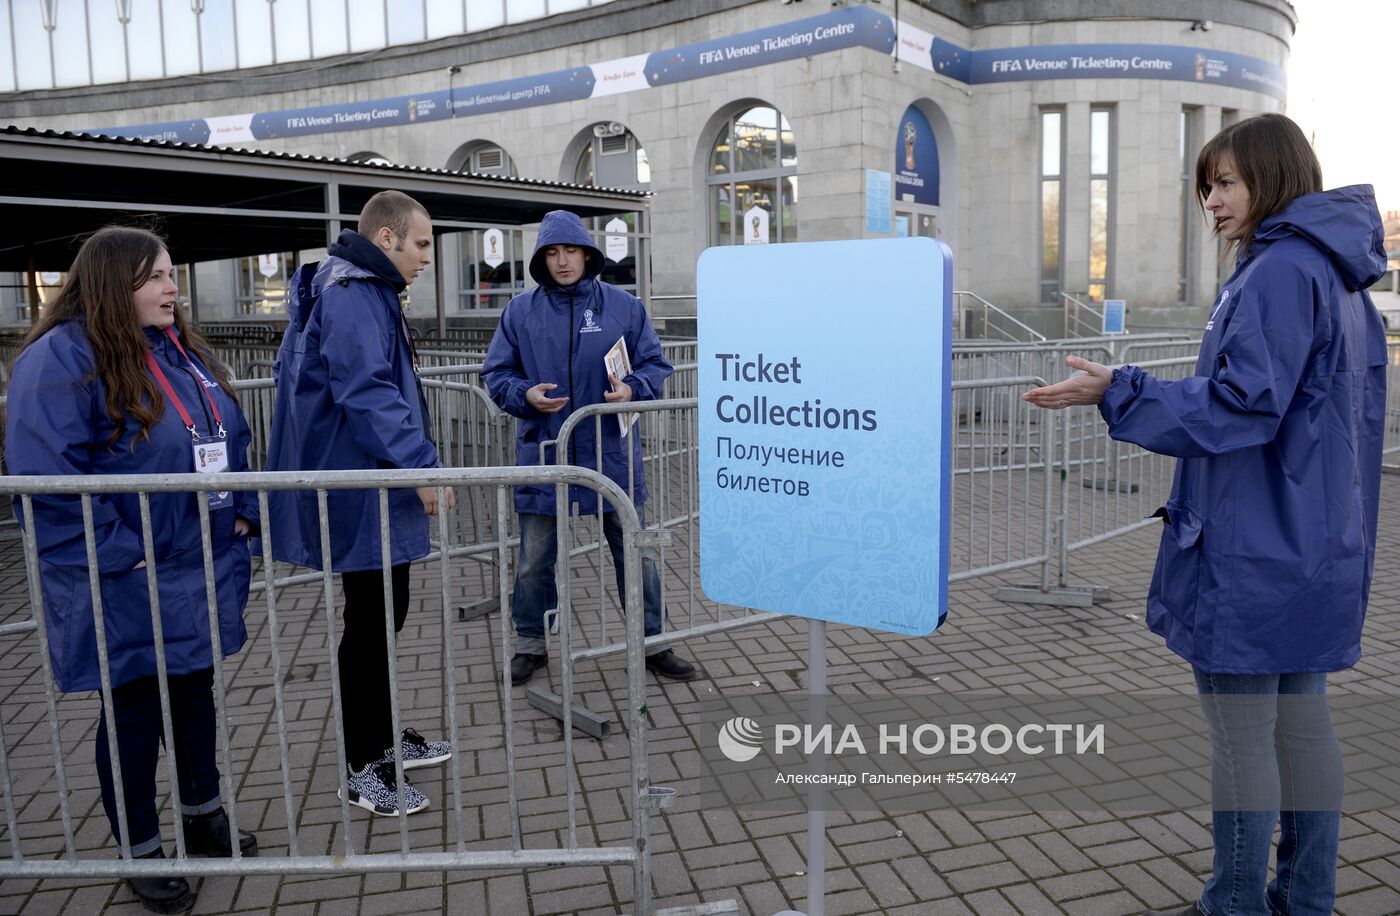 Открытие билетных центров ЧМ-2018 в России